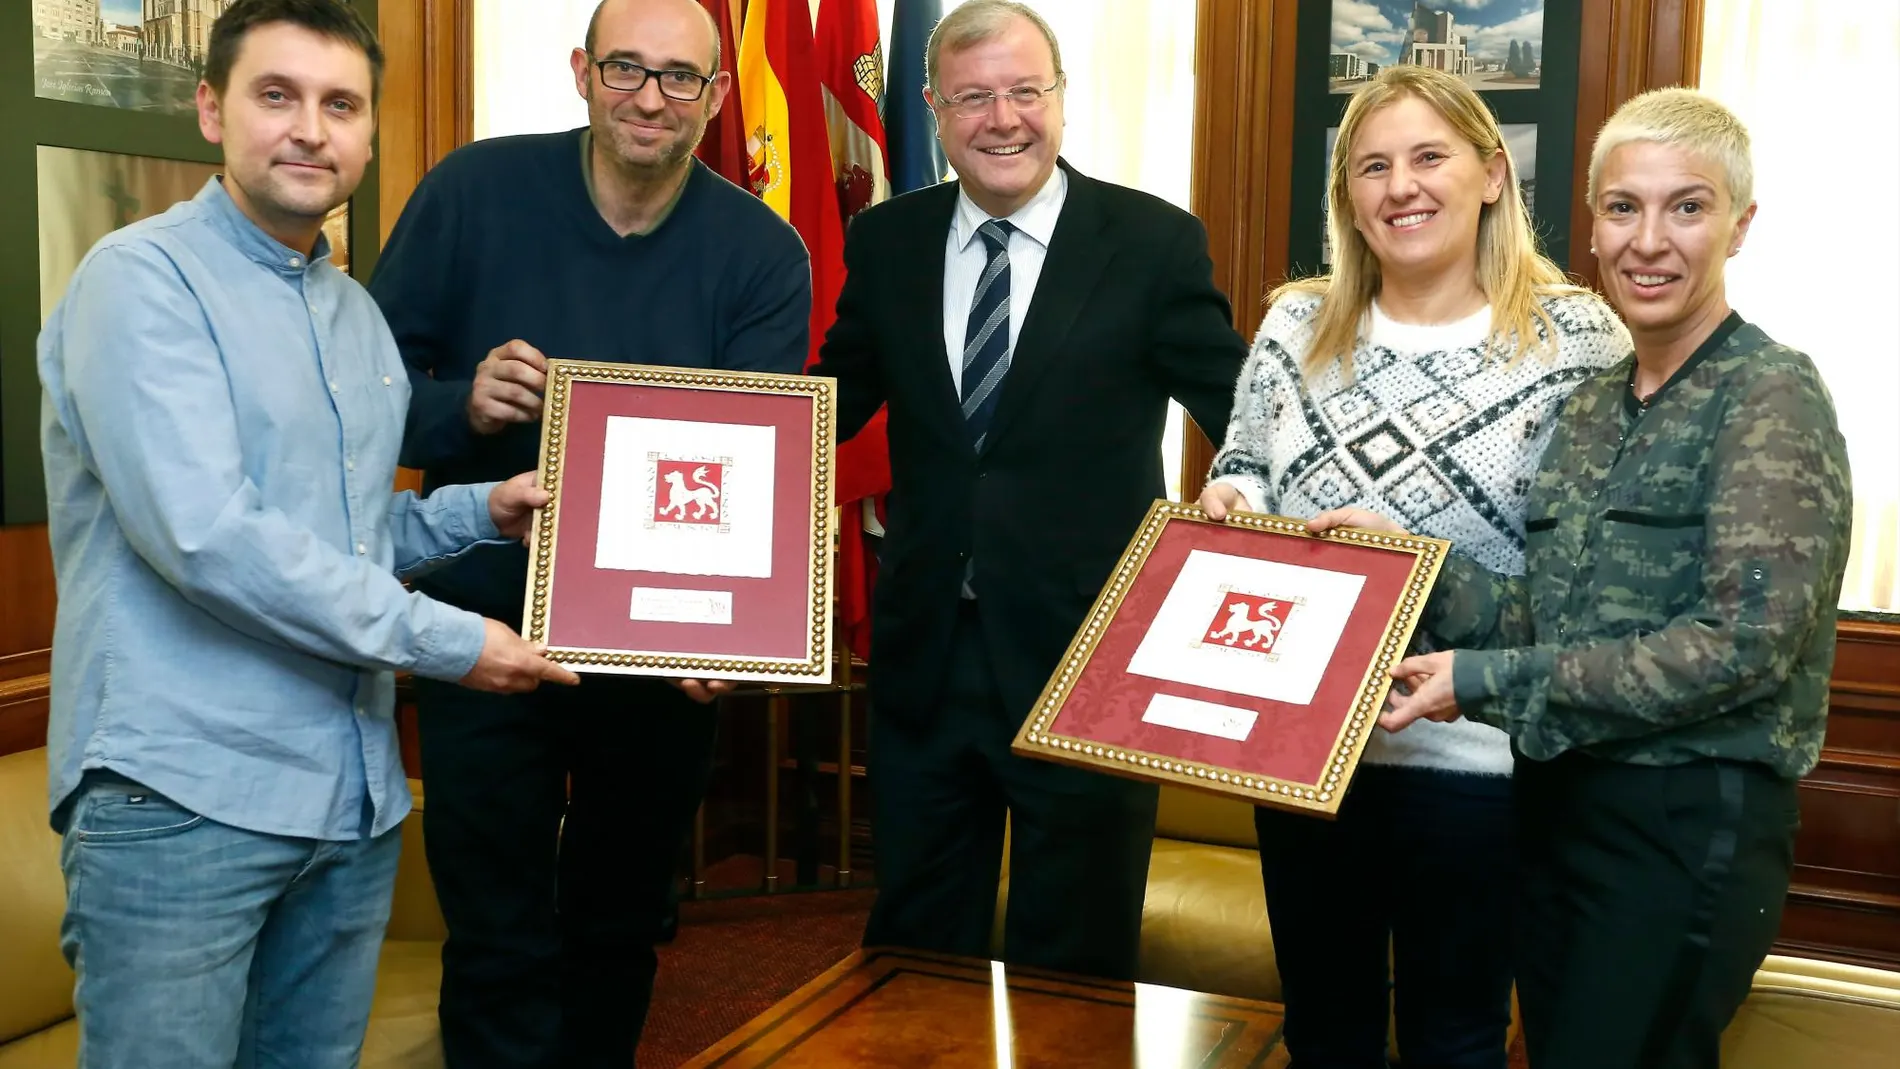 El alcalde de León, Antonio Silván, recibe a los cocineros de los restaurantes Pablo y Cocinandos, que han obtenido una Estrella Michelín